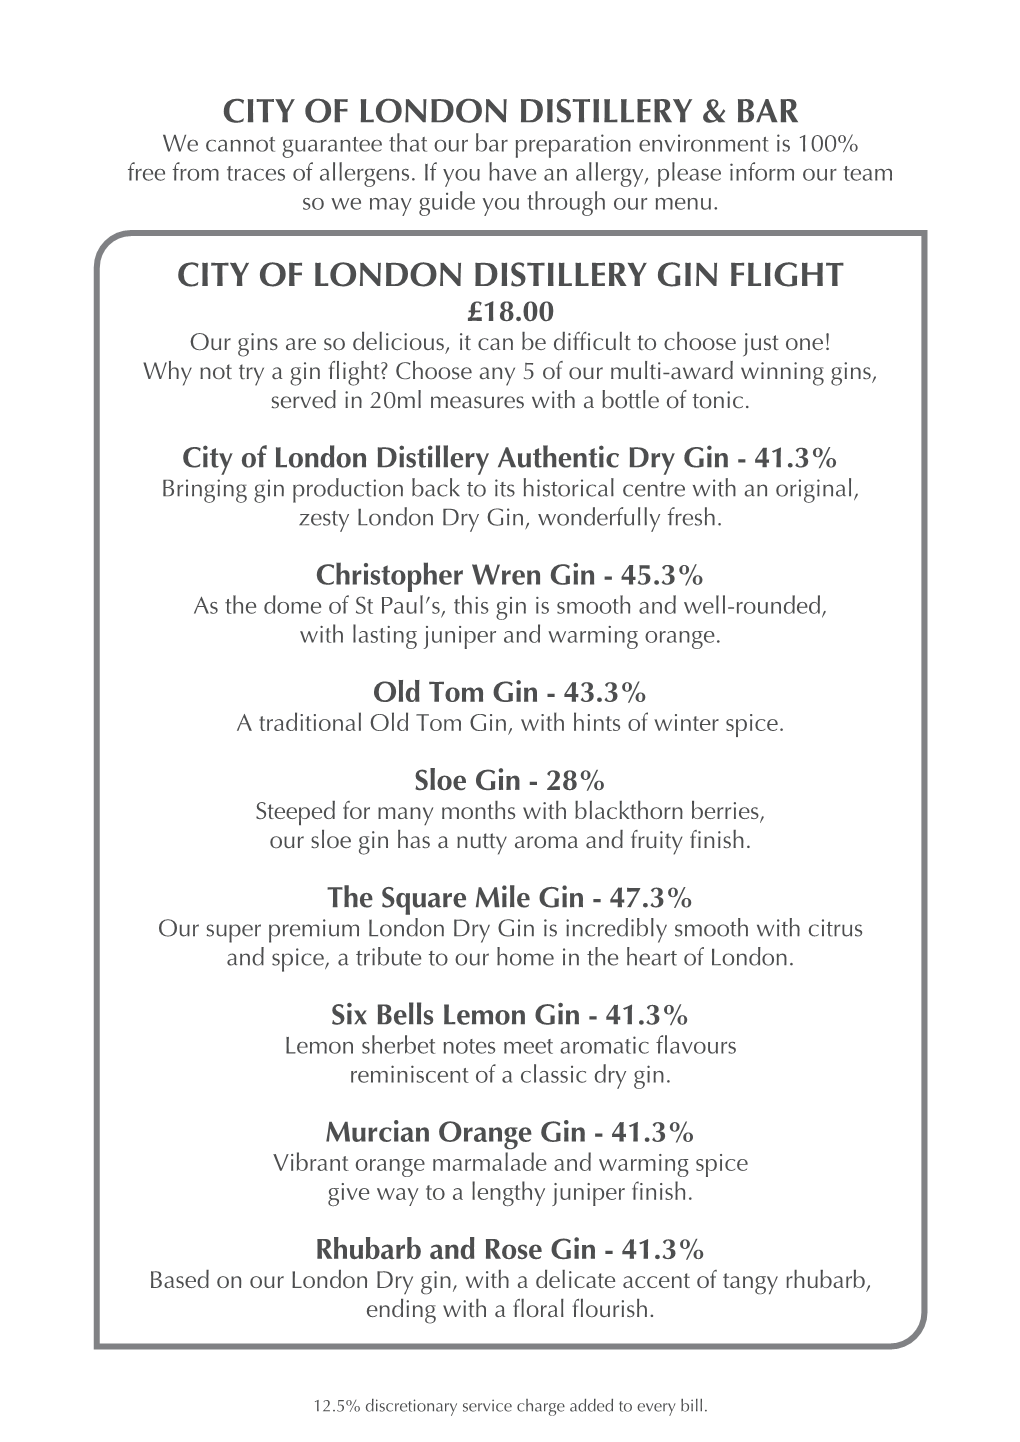 City of London Distillery Gin Flight